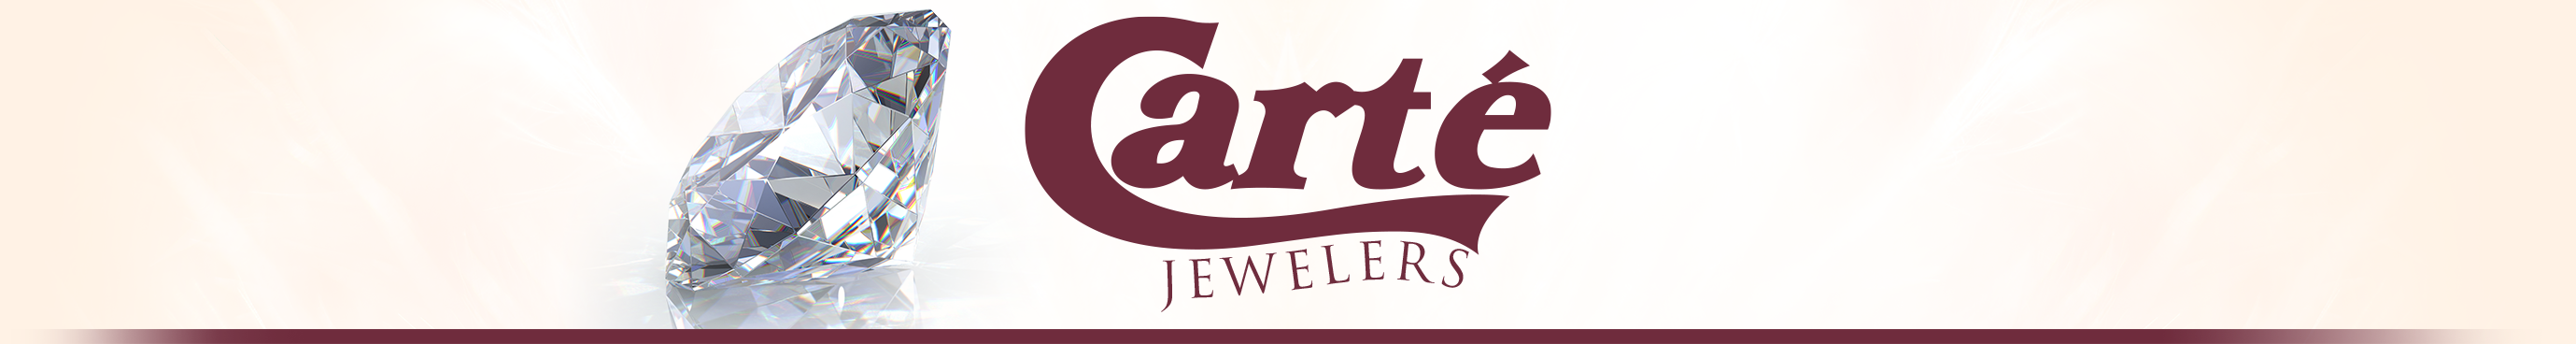 Carté Jewelers Logo